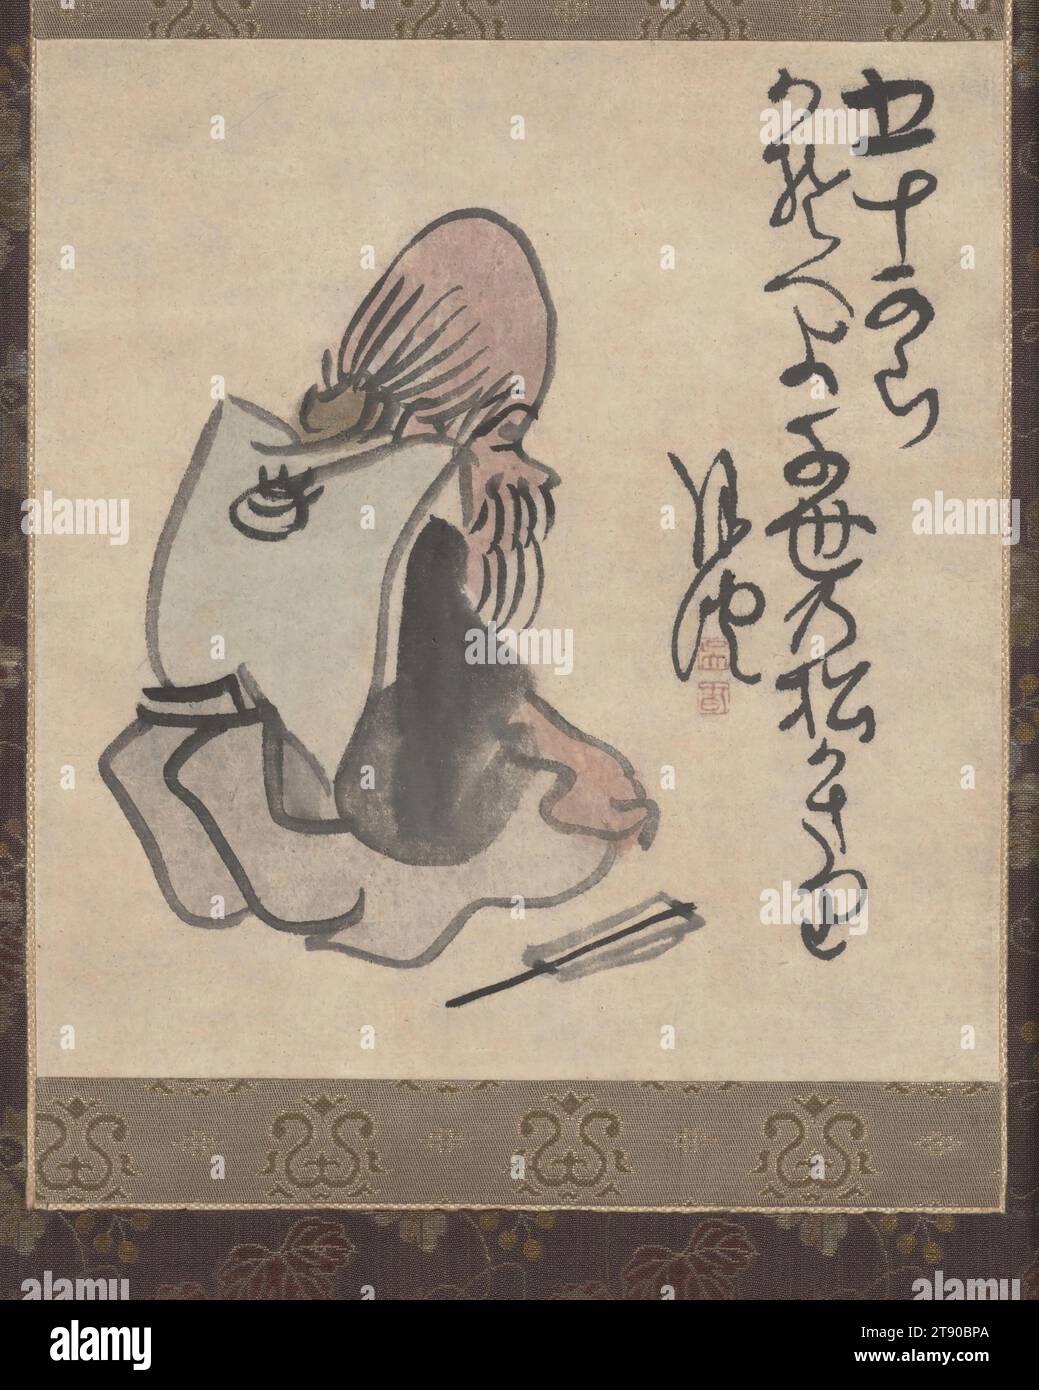 Cincuenta años de edad, finales del siglo XVIII - principios del siglo XIX, Matsumura Goshun, japonés, 1752 - 1811, 7 x 6 1/2 in. (17,78 x 16,51 cm) (imagen)32 5/8 x 11 1/8 in. (82,87 x 28,26 cm) (montaje, sin rodillo), Tinta y color sobre papel, Japón, siglos XVIII-XIX Foto de stock